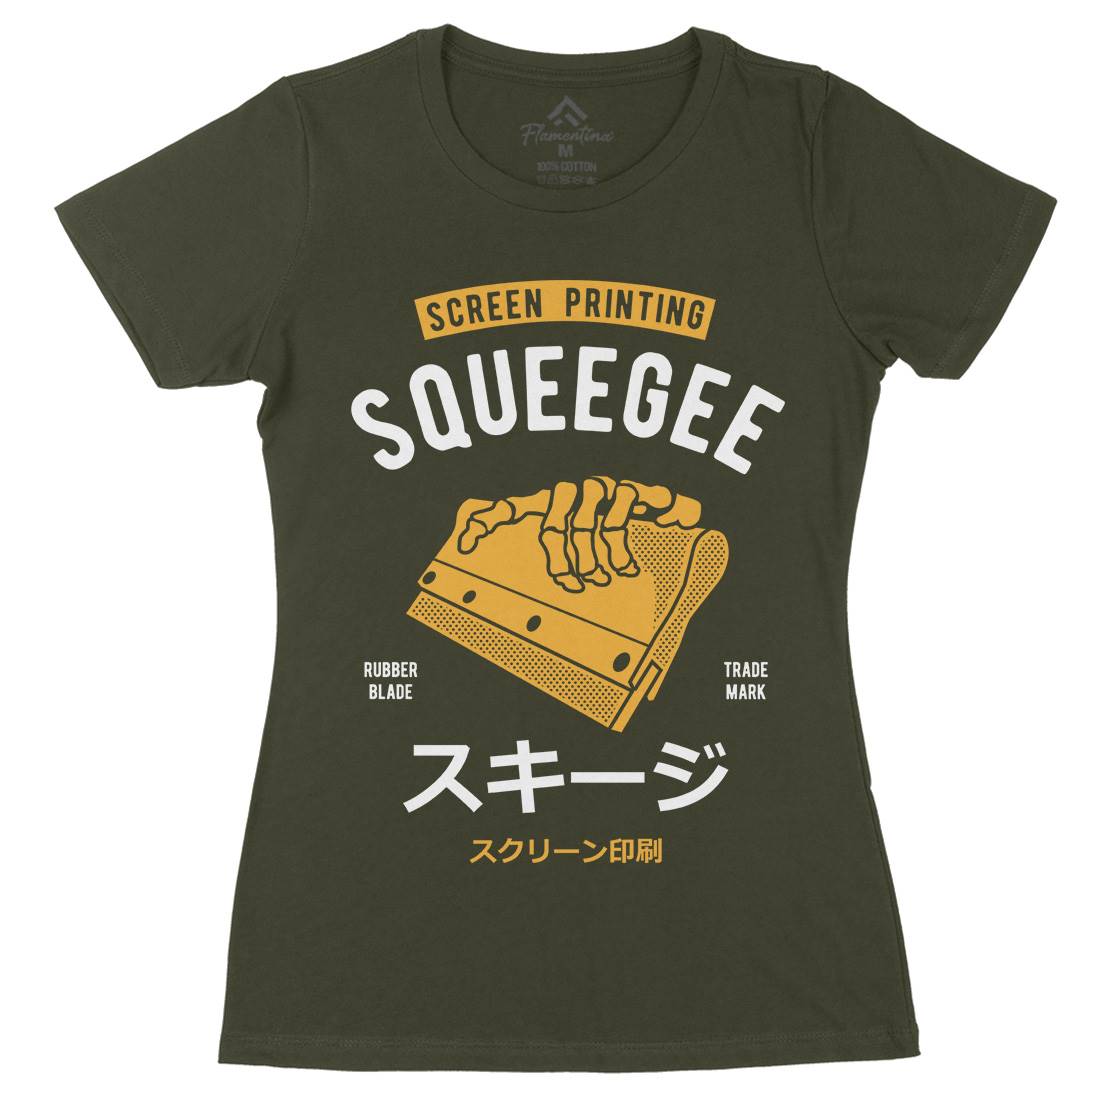 Squeegee Social Club Womens Organic Crew Neck T-Shirt Work A282